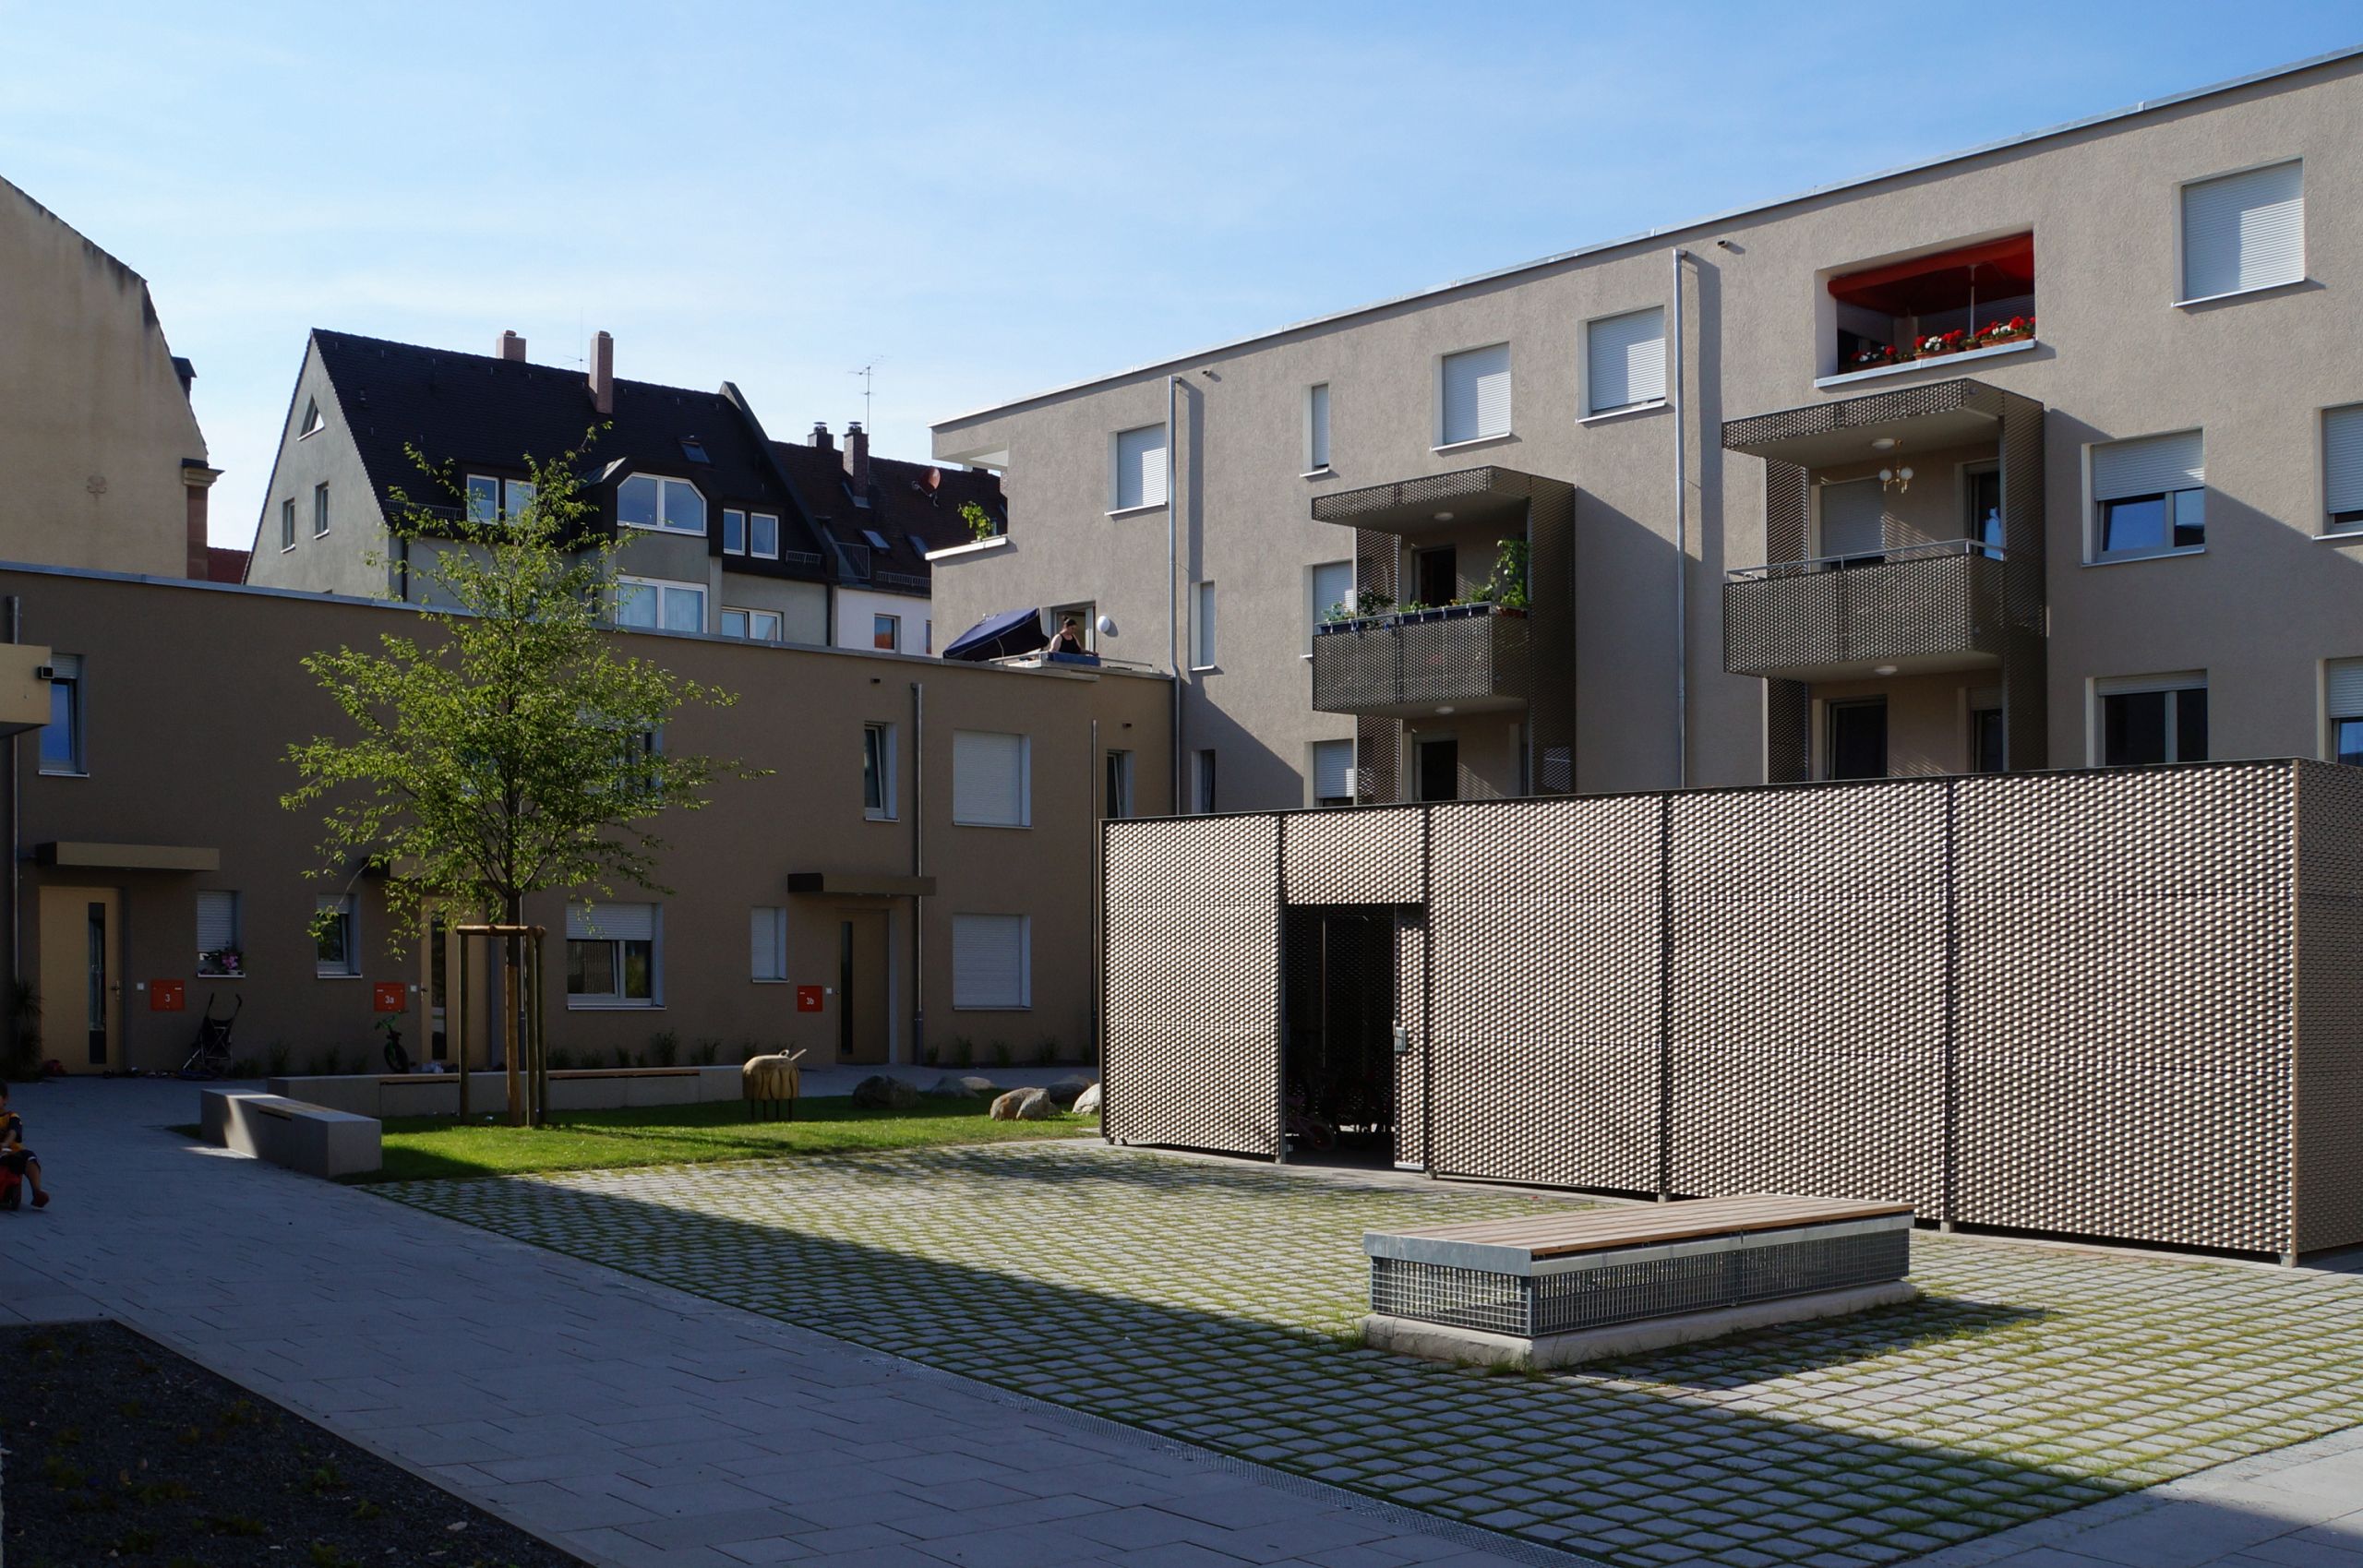 Bild: Wohnen bei St. Ludwig in Nürnberg, Wohnhof mit Fahrradhaus und Spielbereich, Foto: ver.de